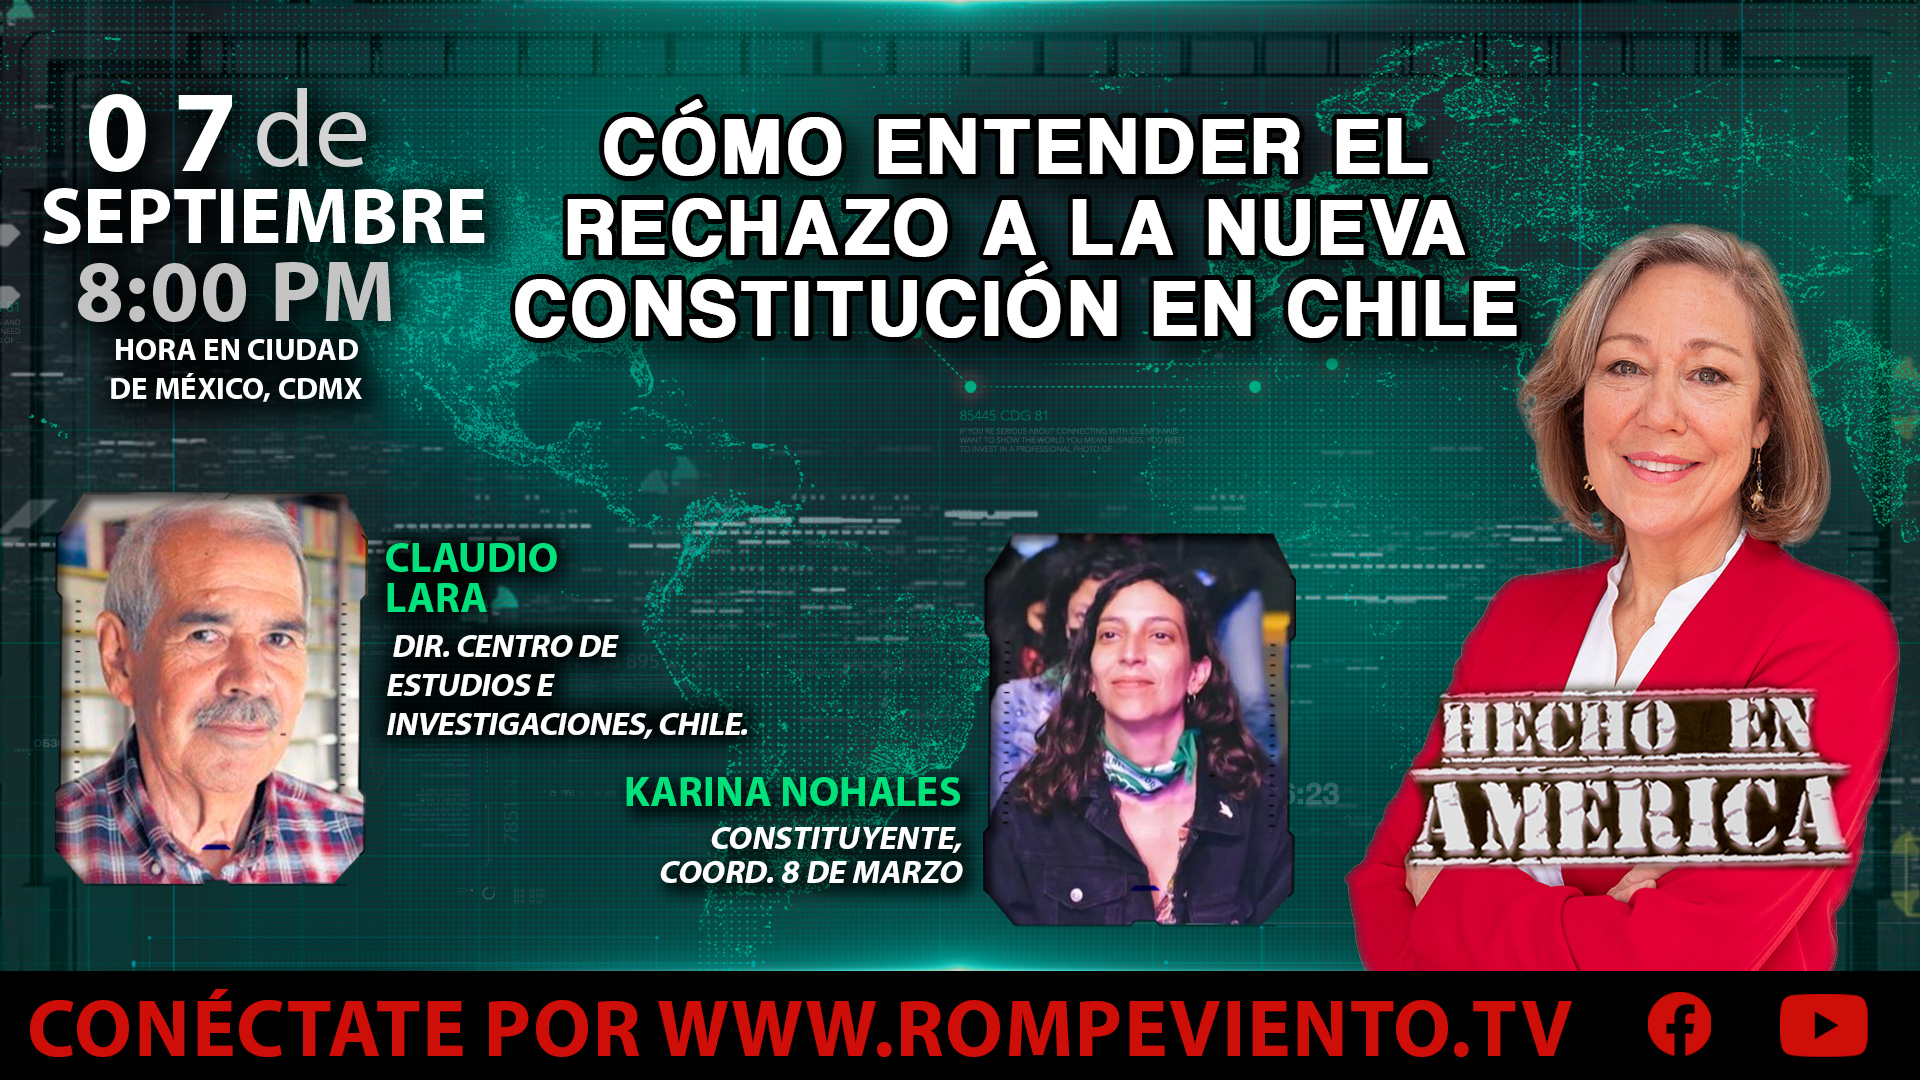 Cómo entender el rechazo a la Nueva Constitución en Chile - Hecho en América